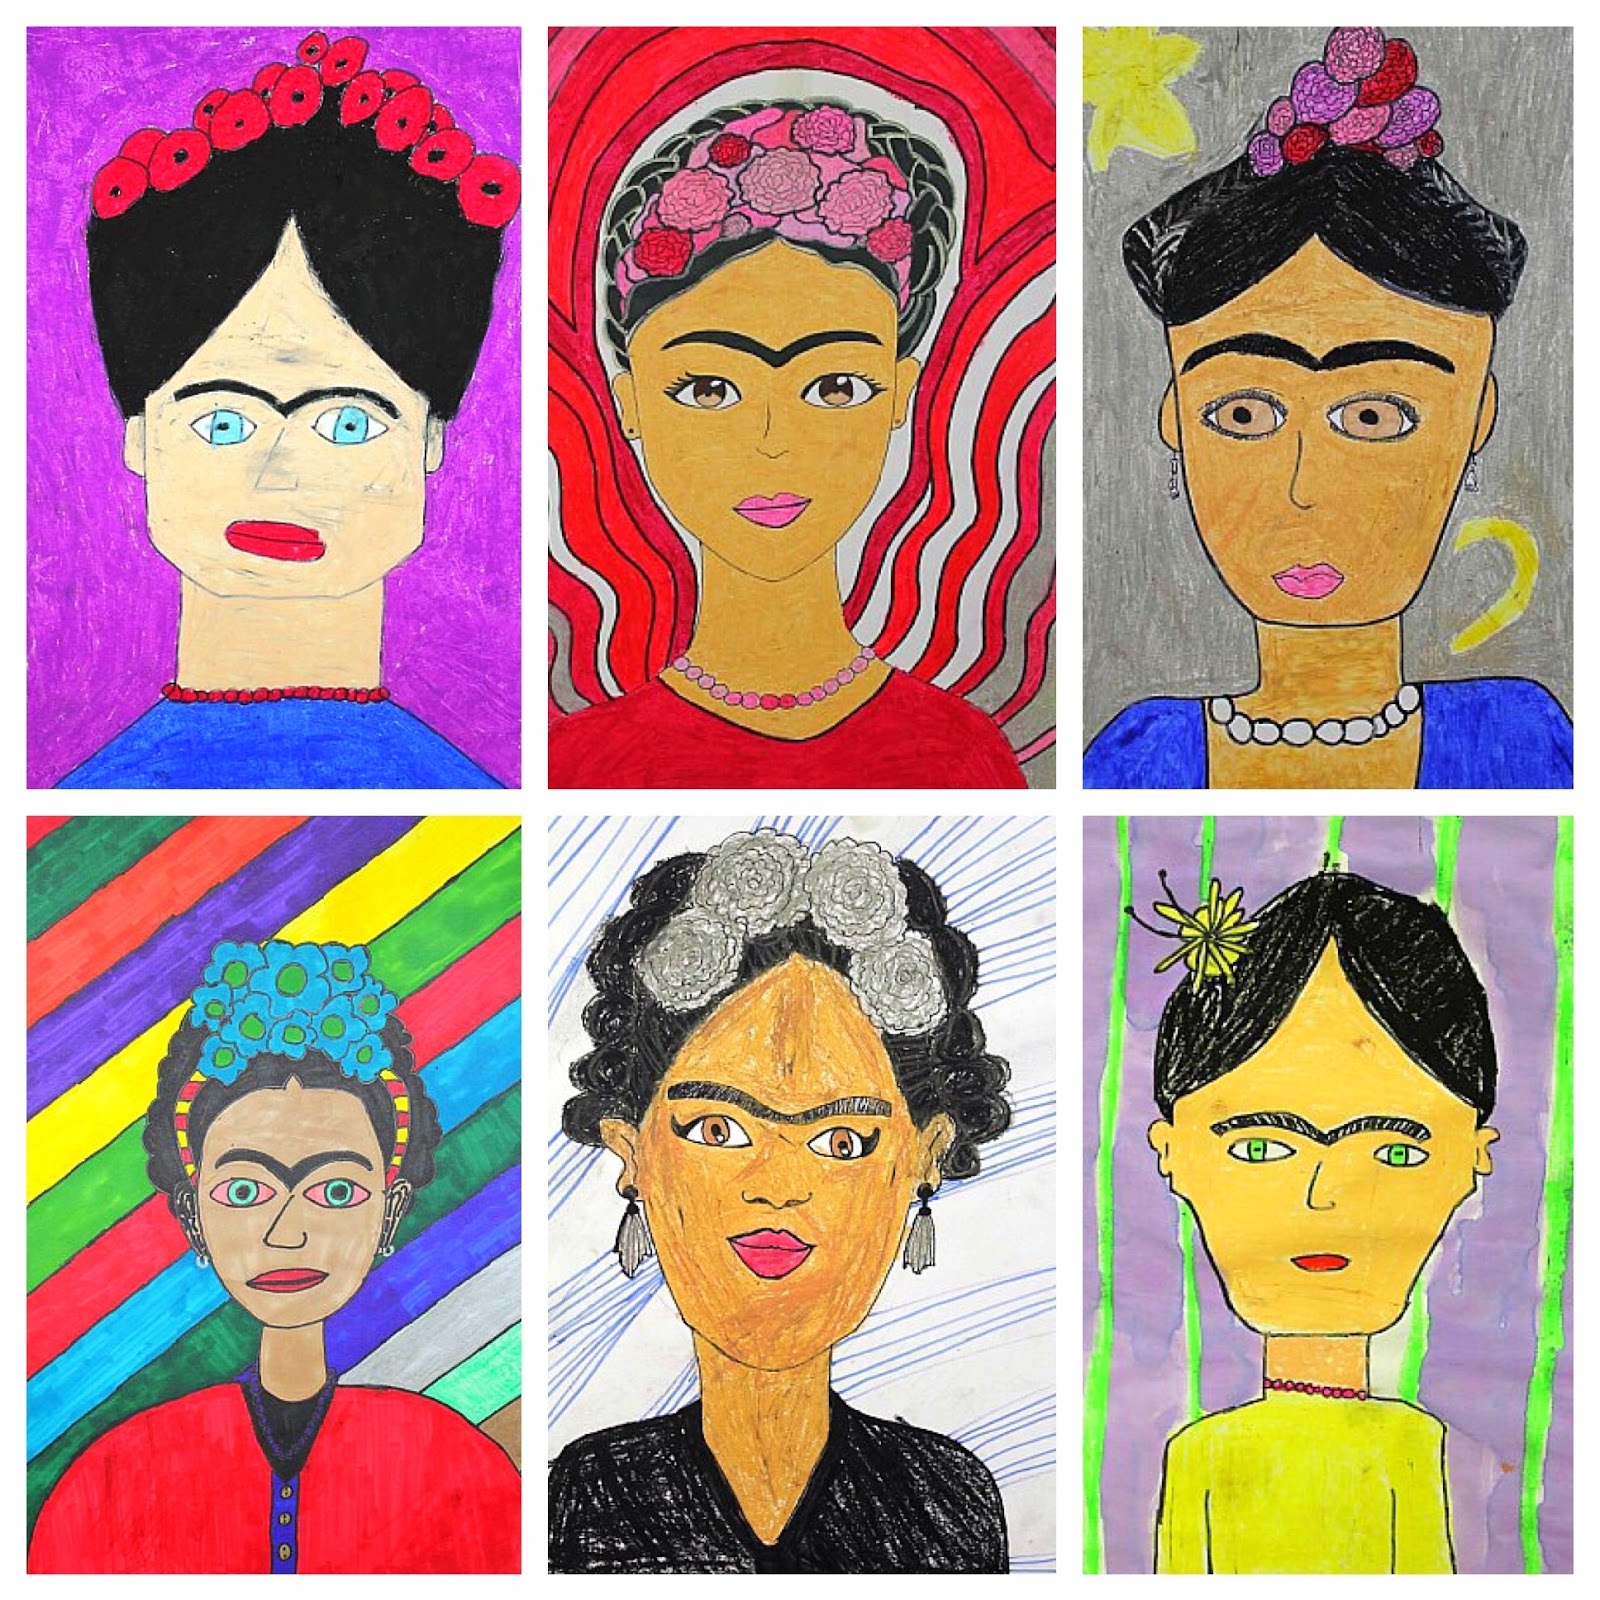 Frida Kahlo portrait Art Project for Kids